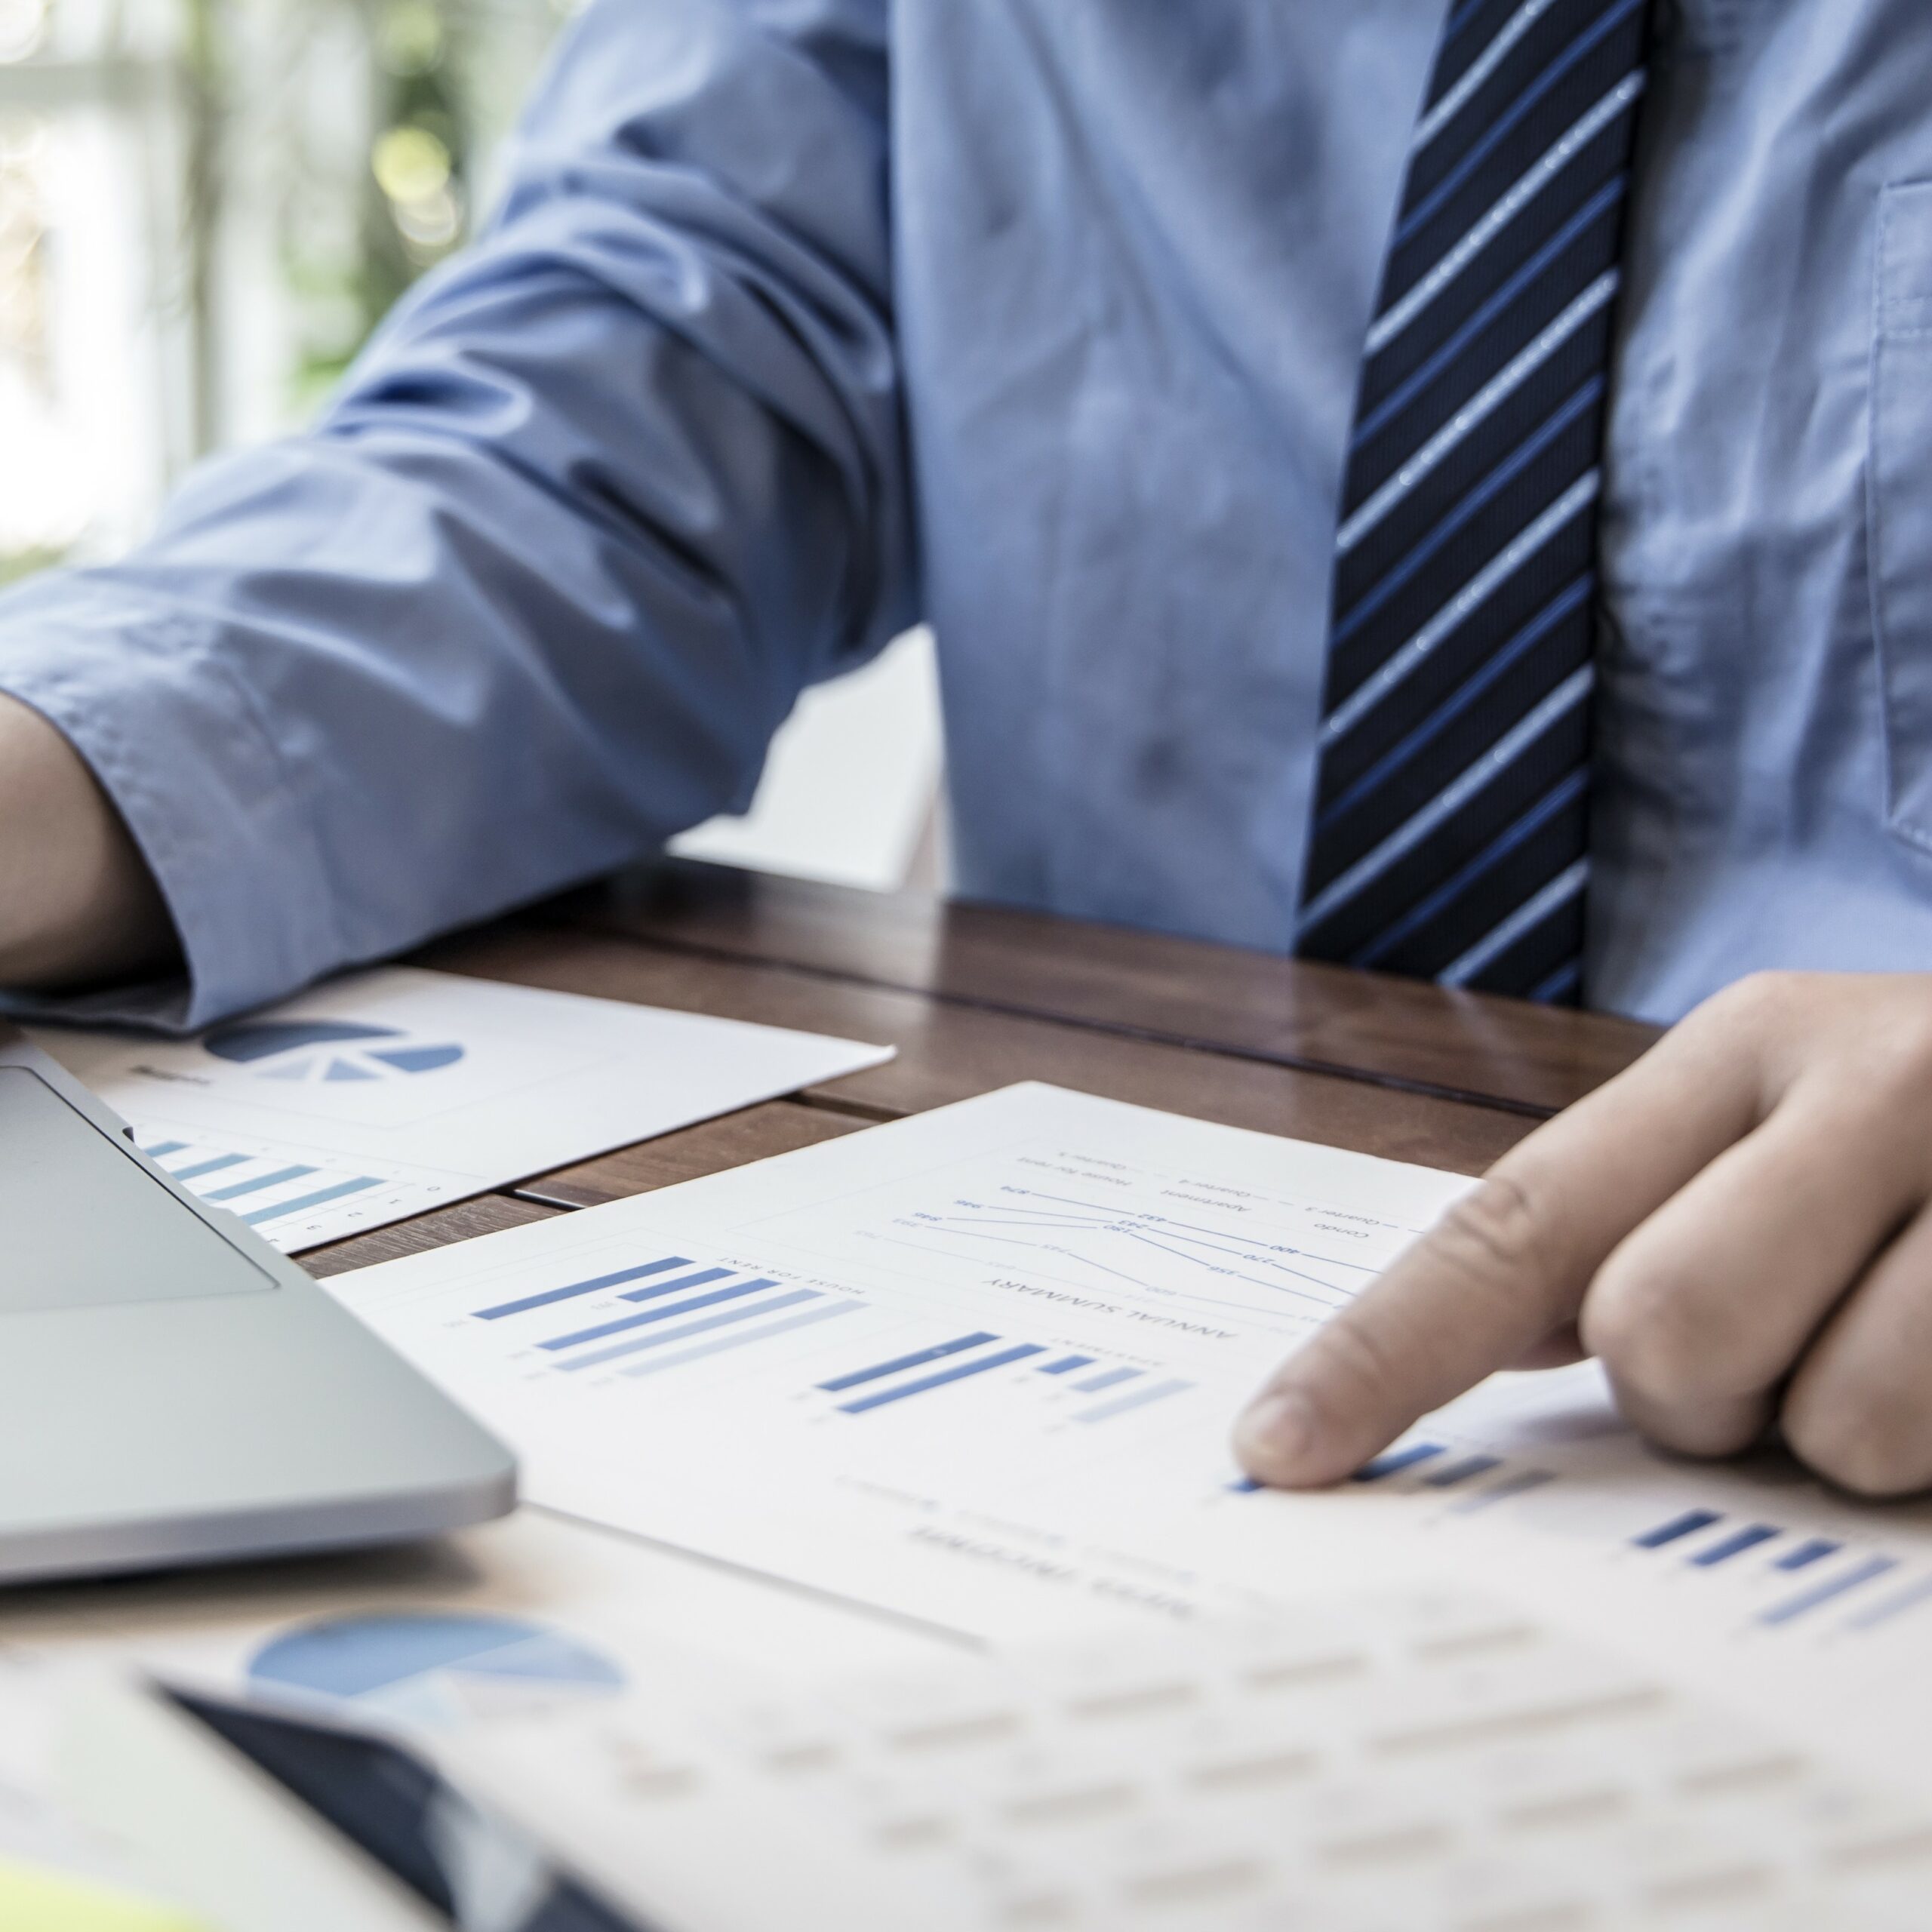 Financial businessmen use laptop to analyze marketing strategies